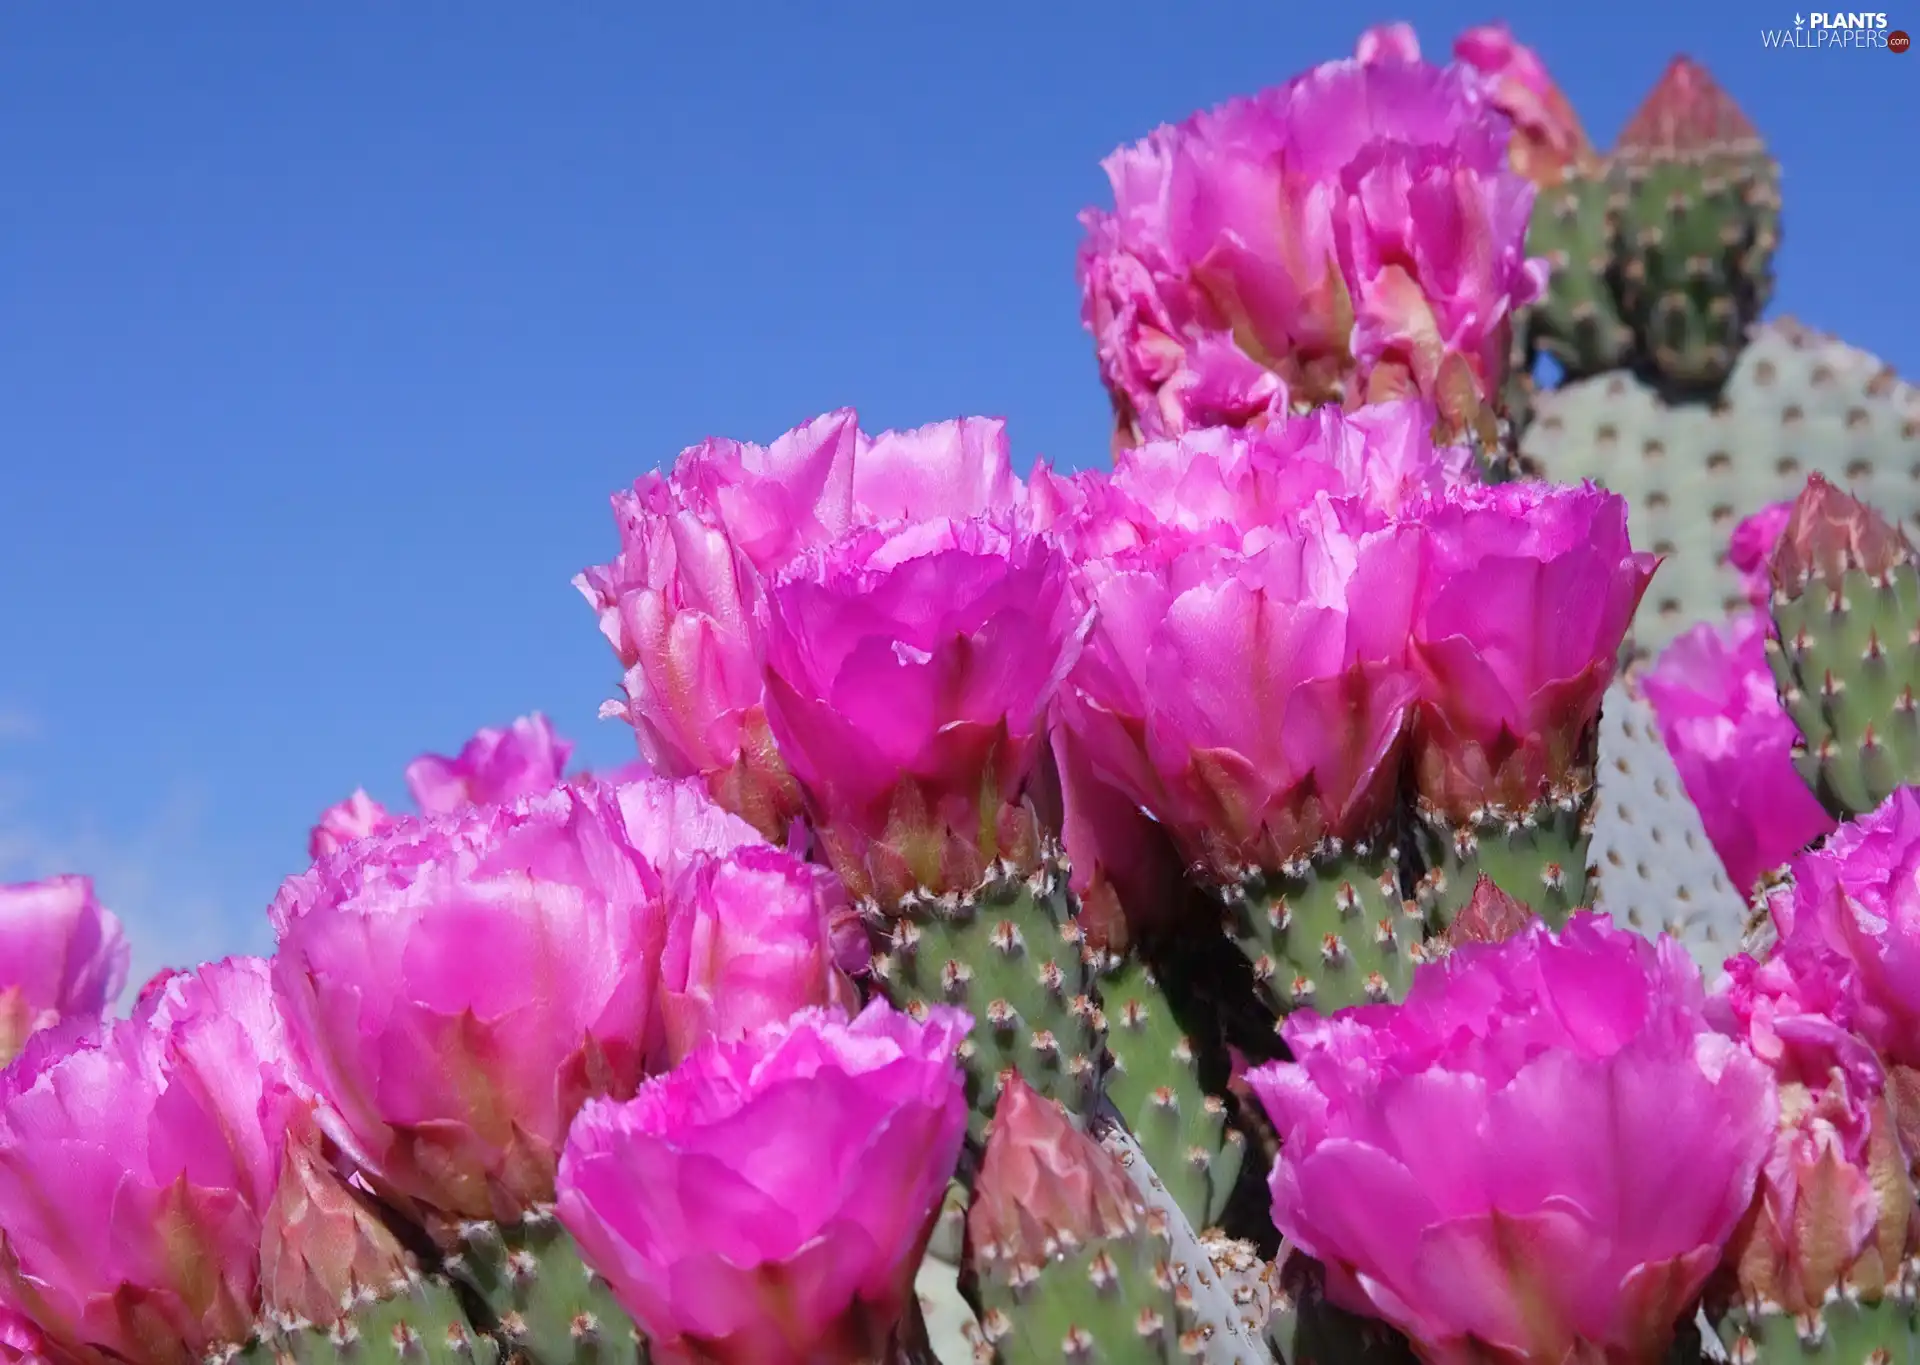 Flowers, cactus